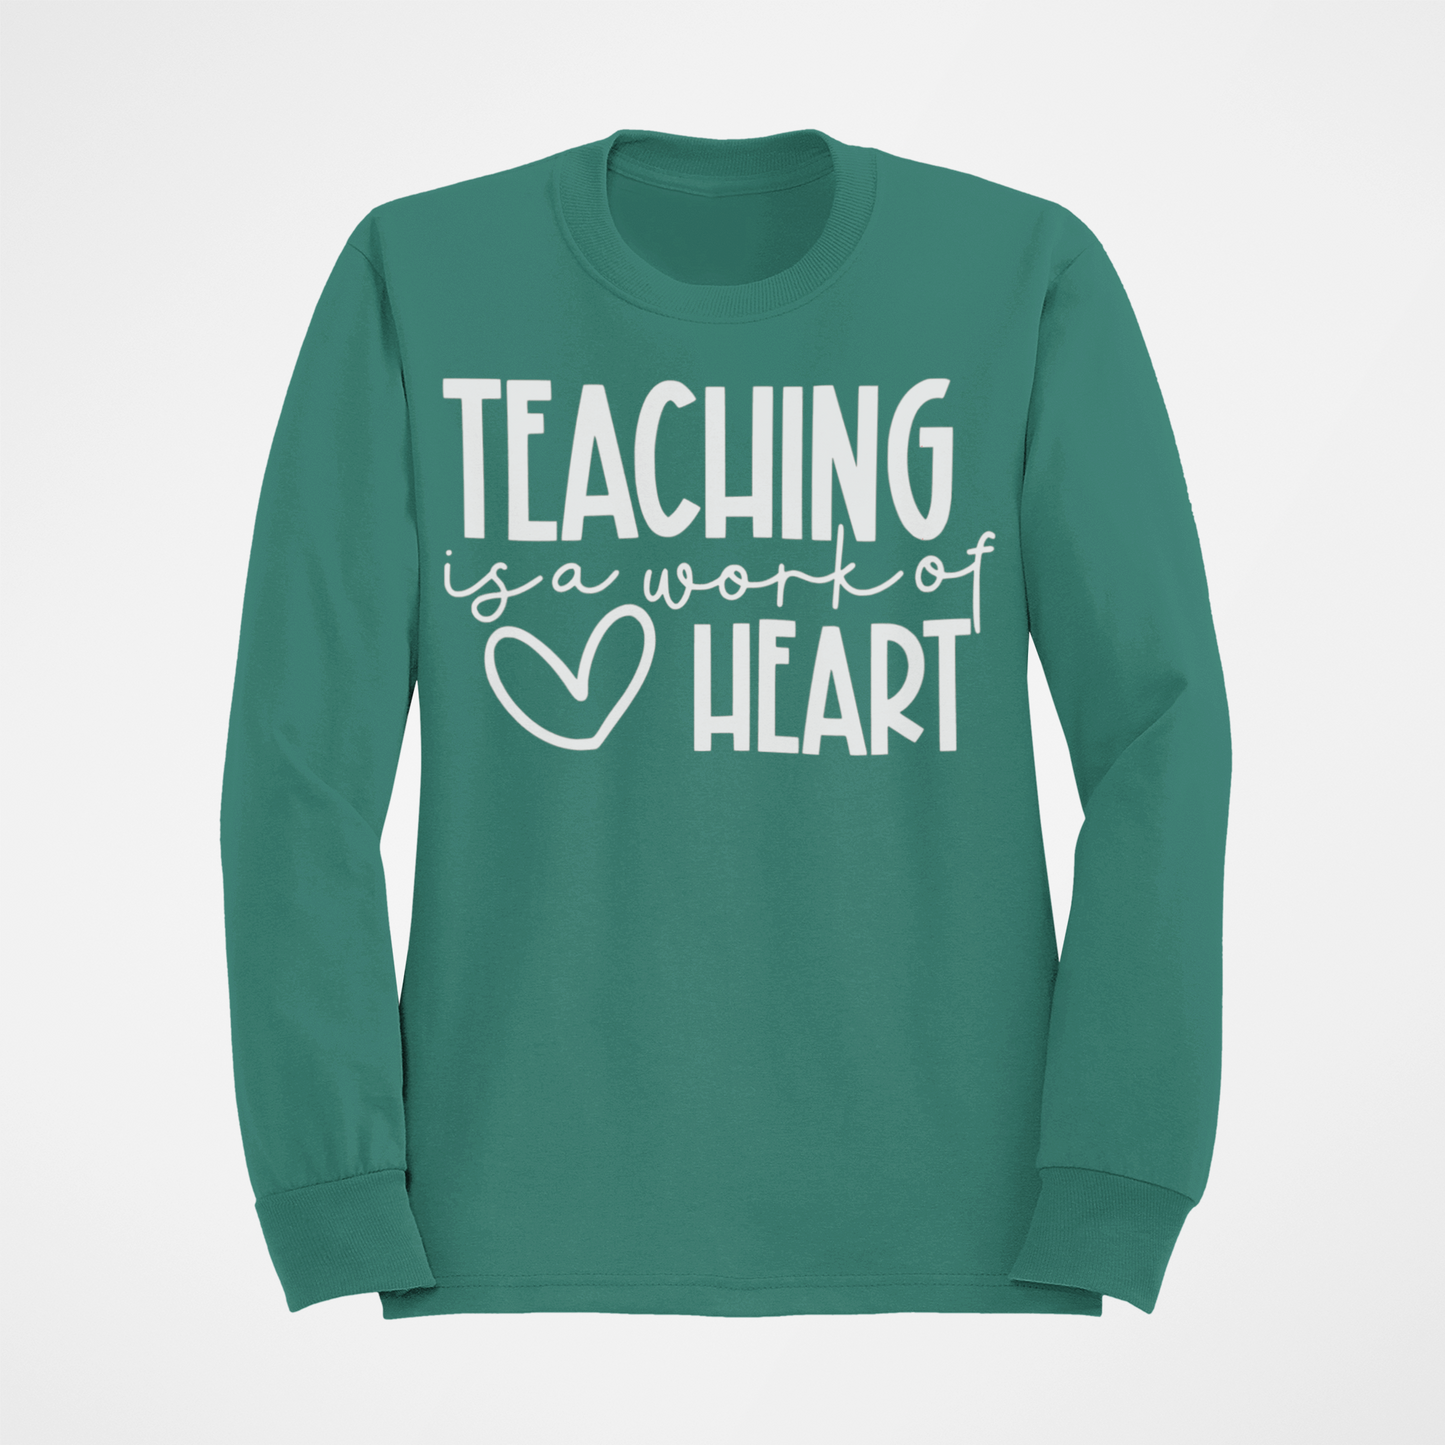 Teaching Is A Work of Heart Teacher T-shirt